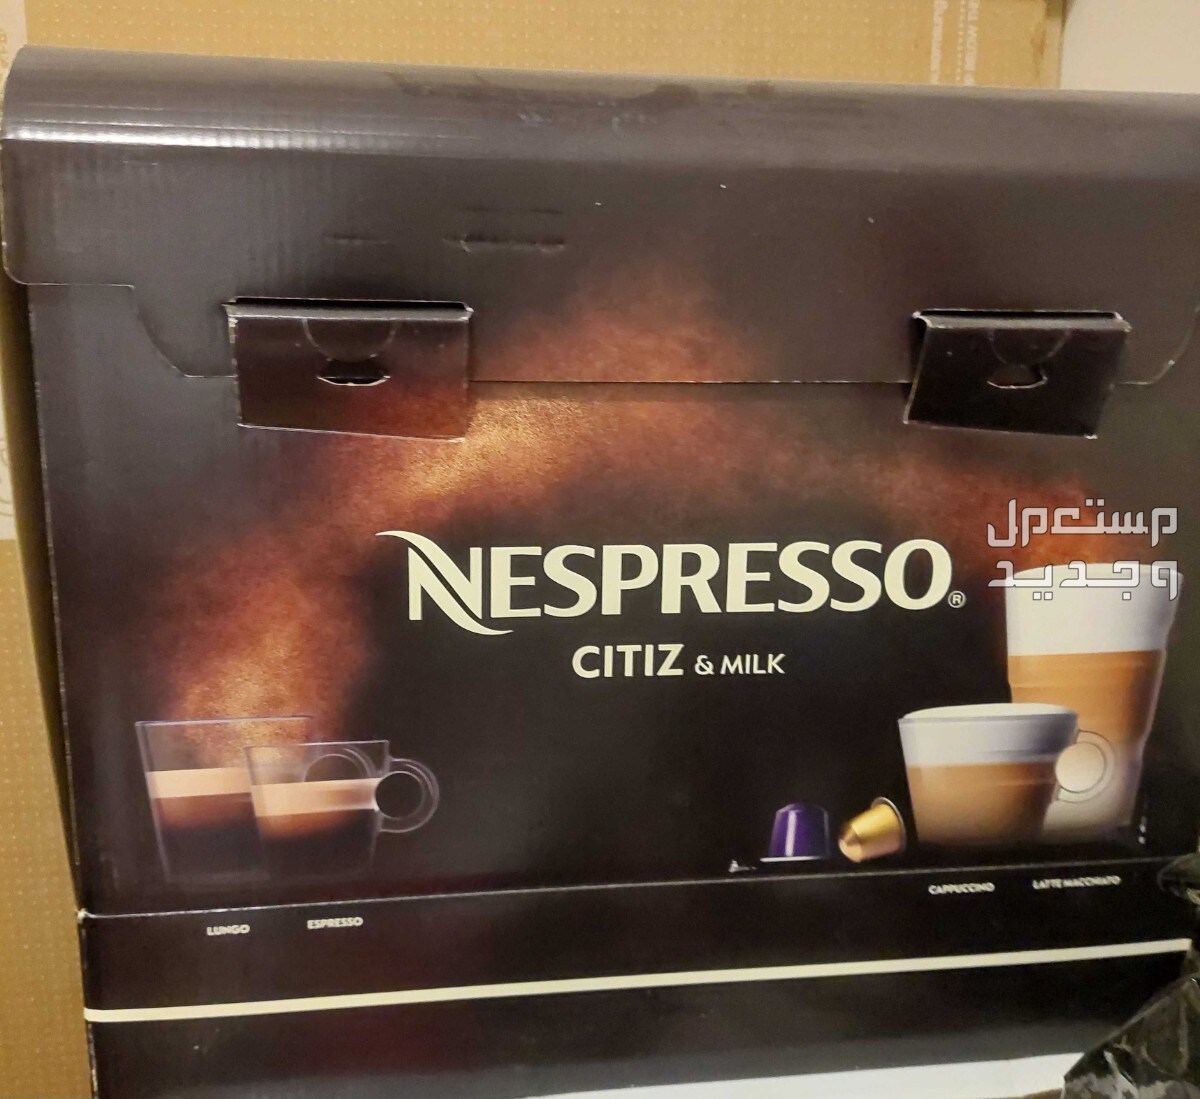 nespresso with milk foamer